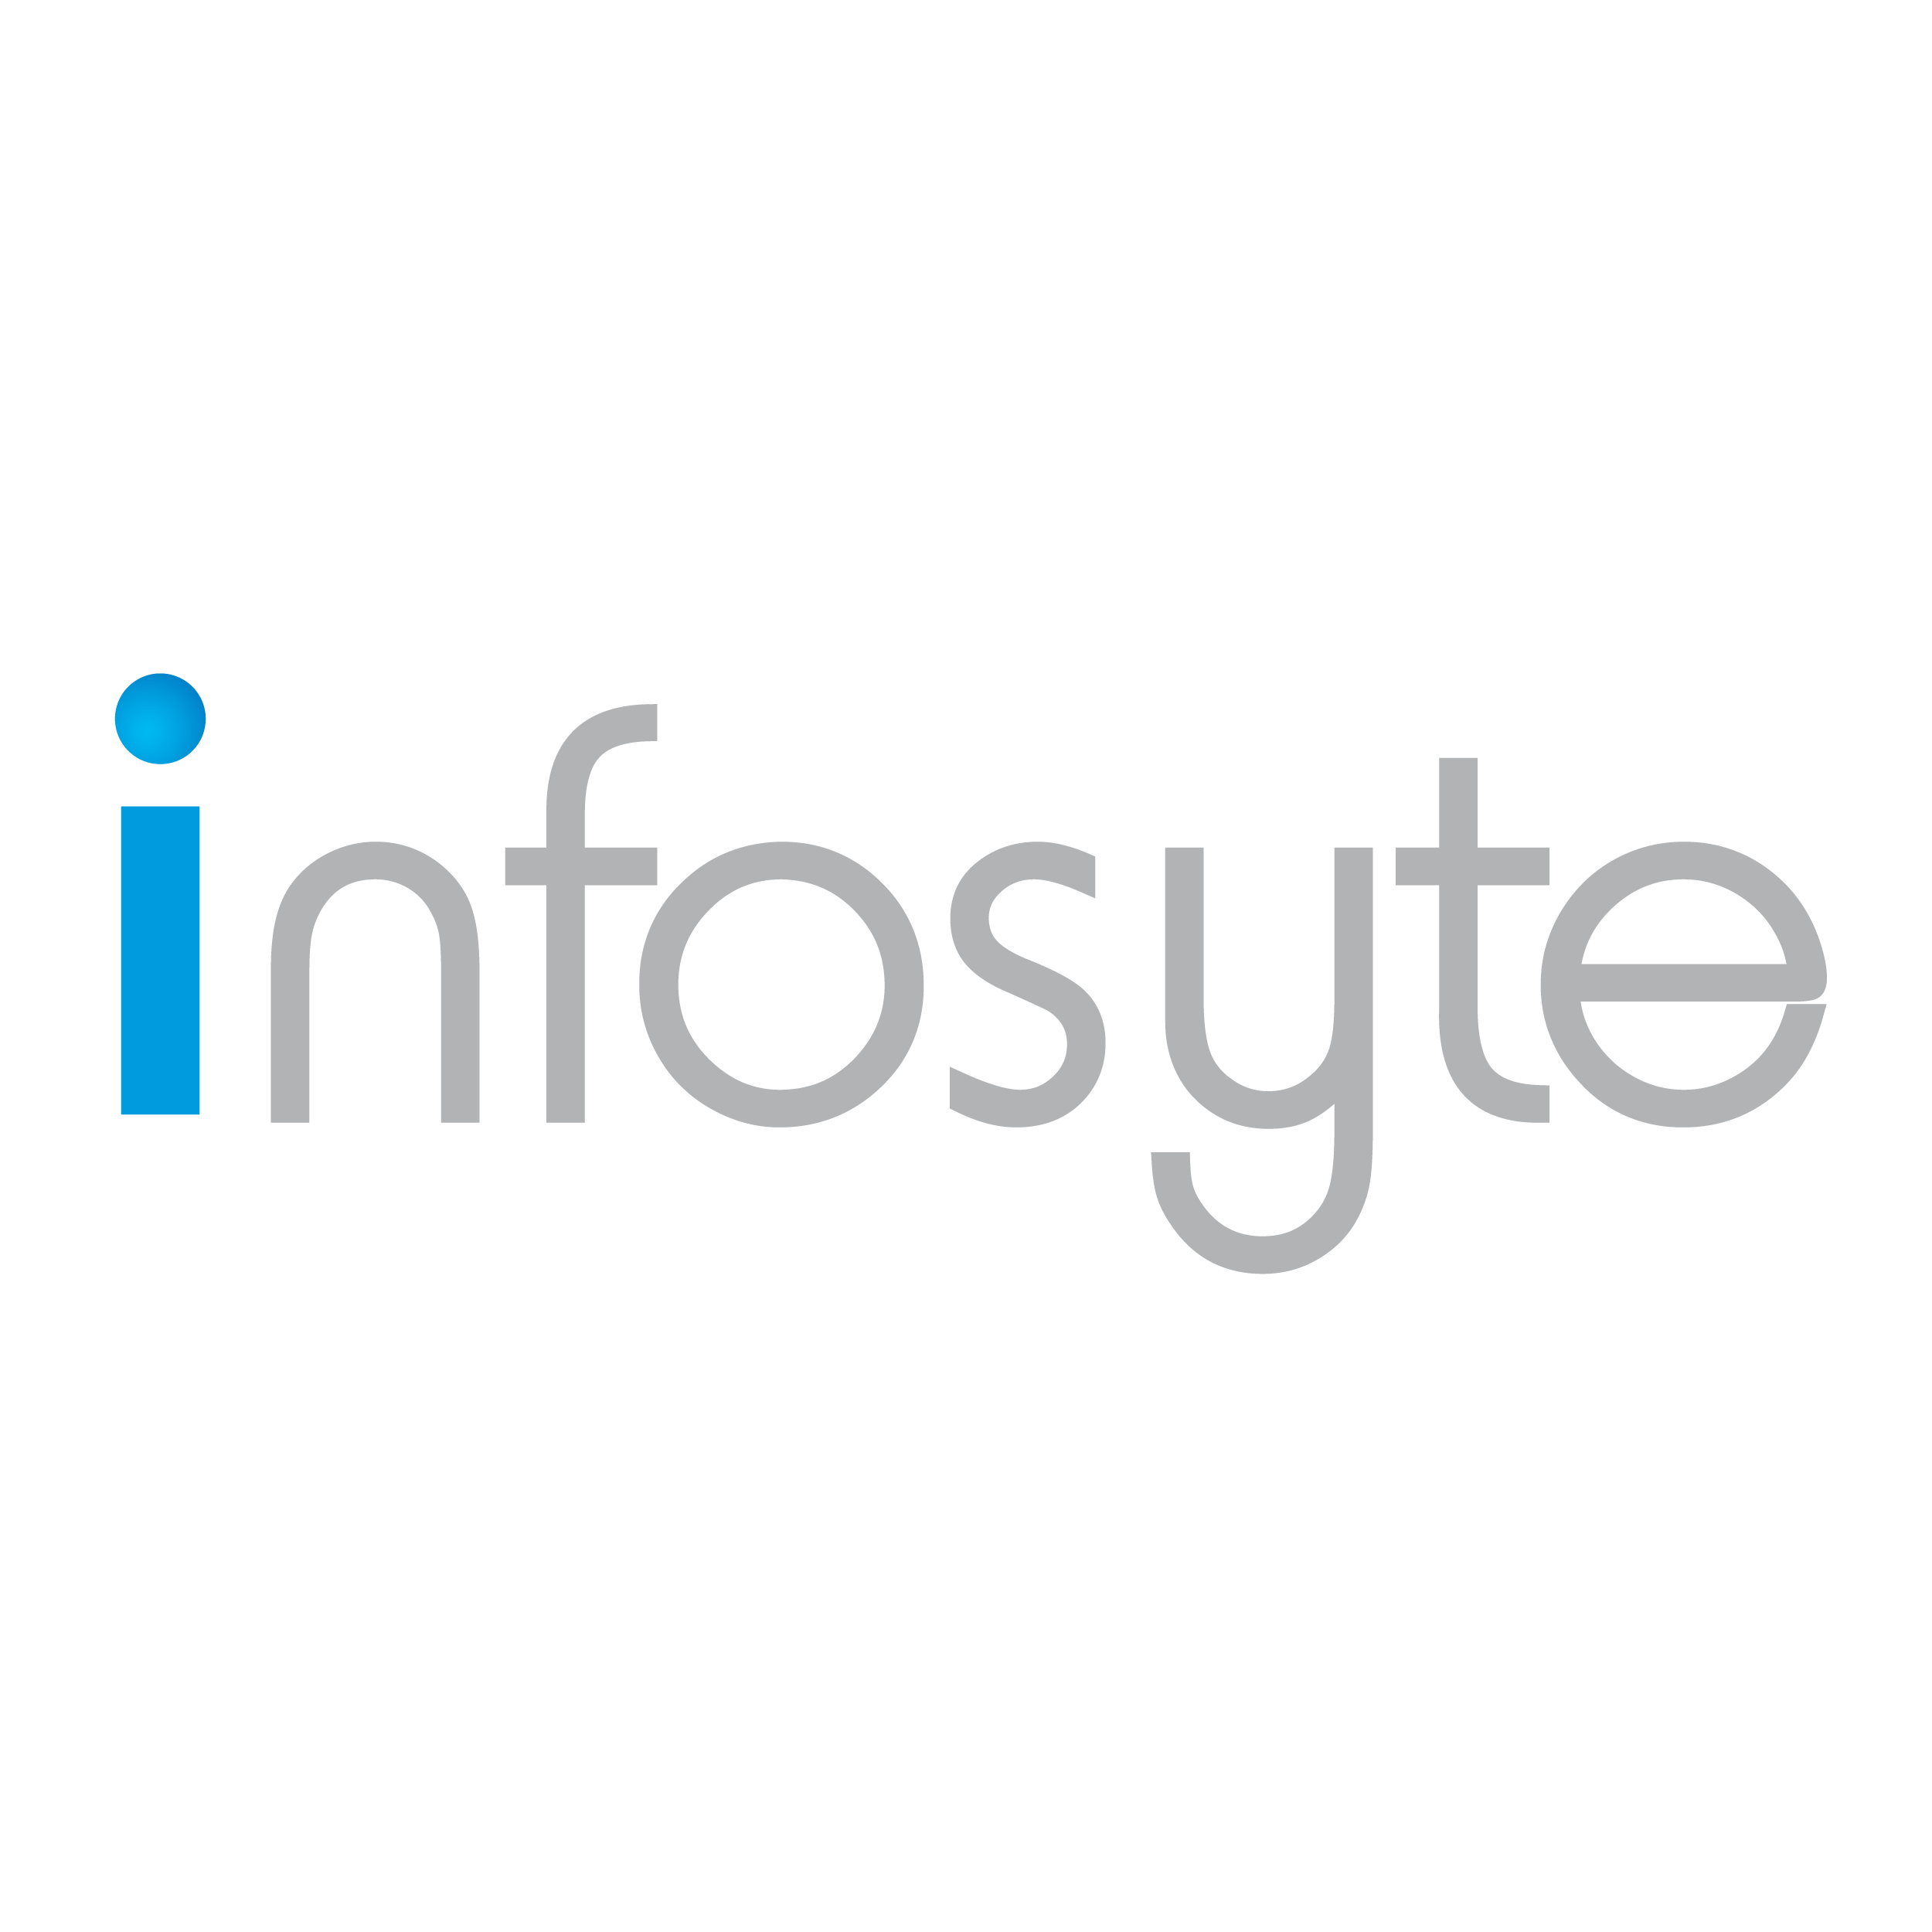 Infosyte Logo 1